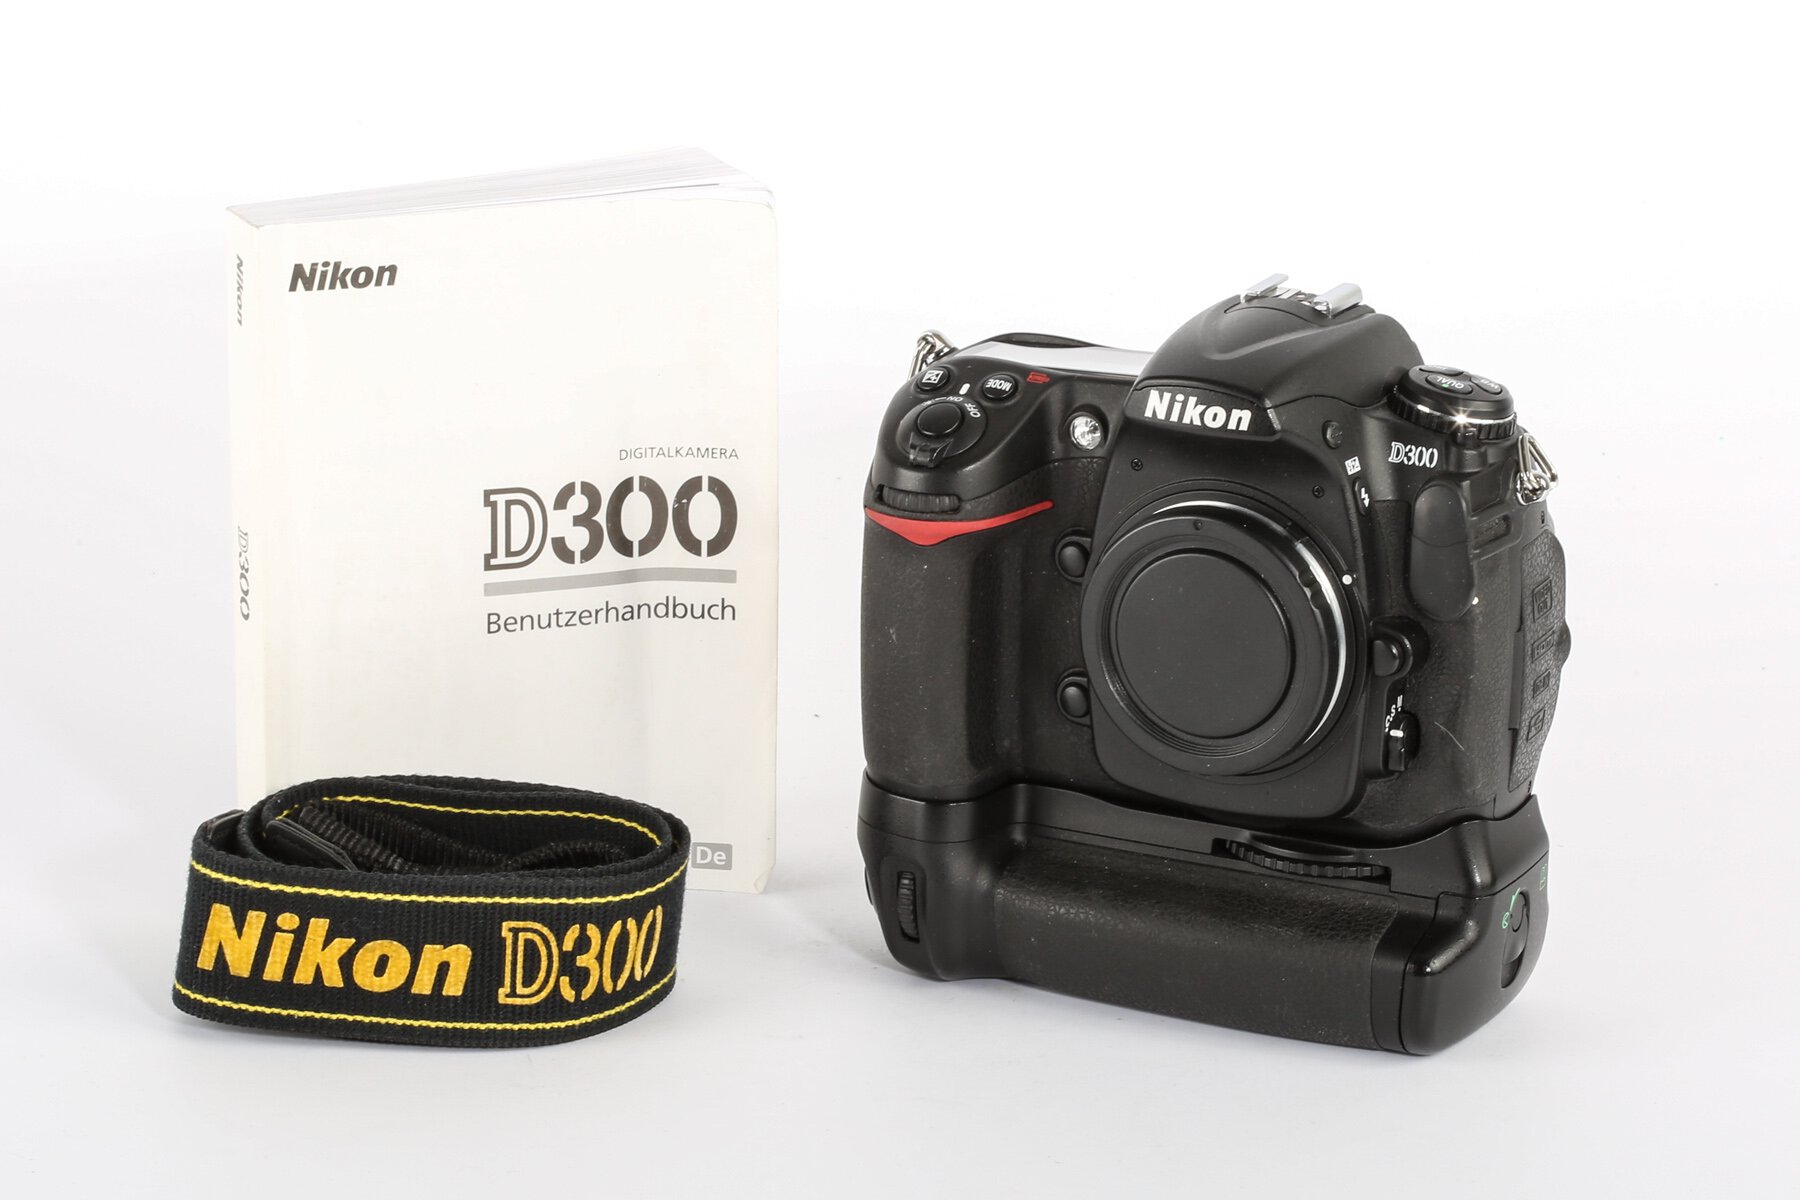 Nikon D300 22000 Auslösungen + MB-D10